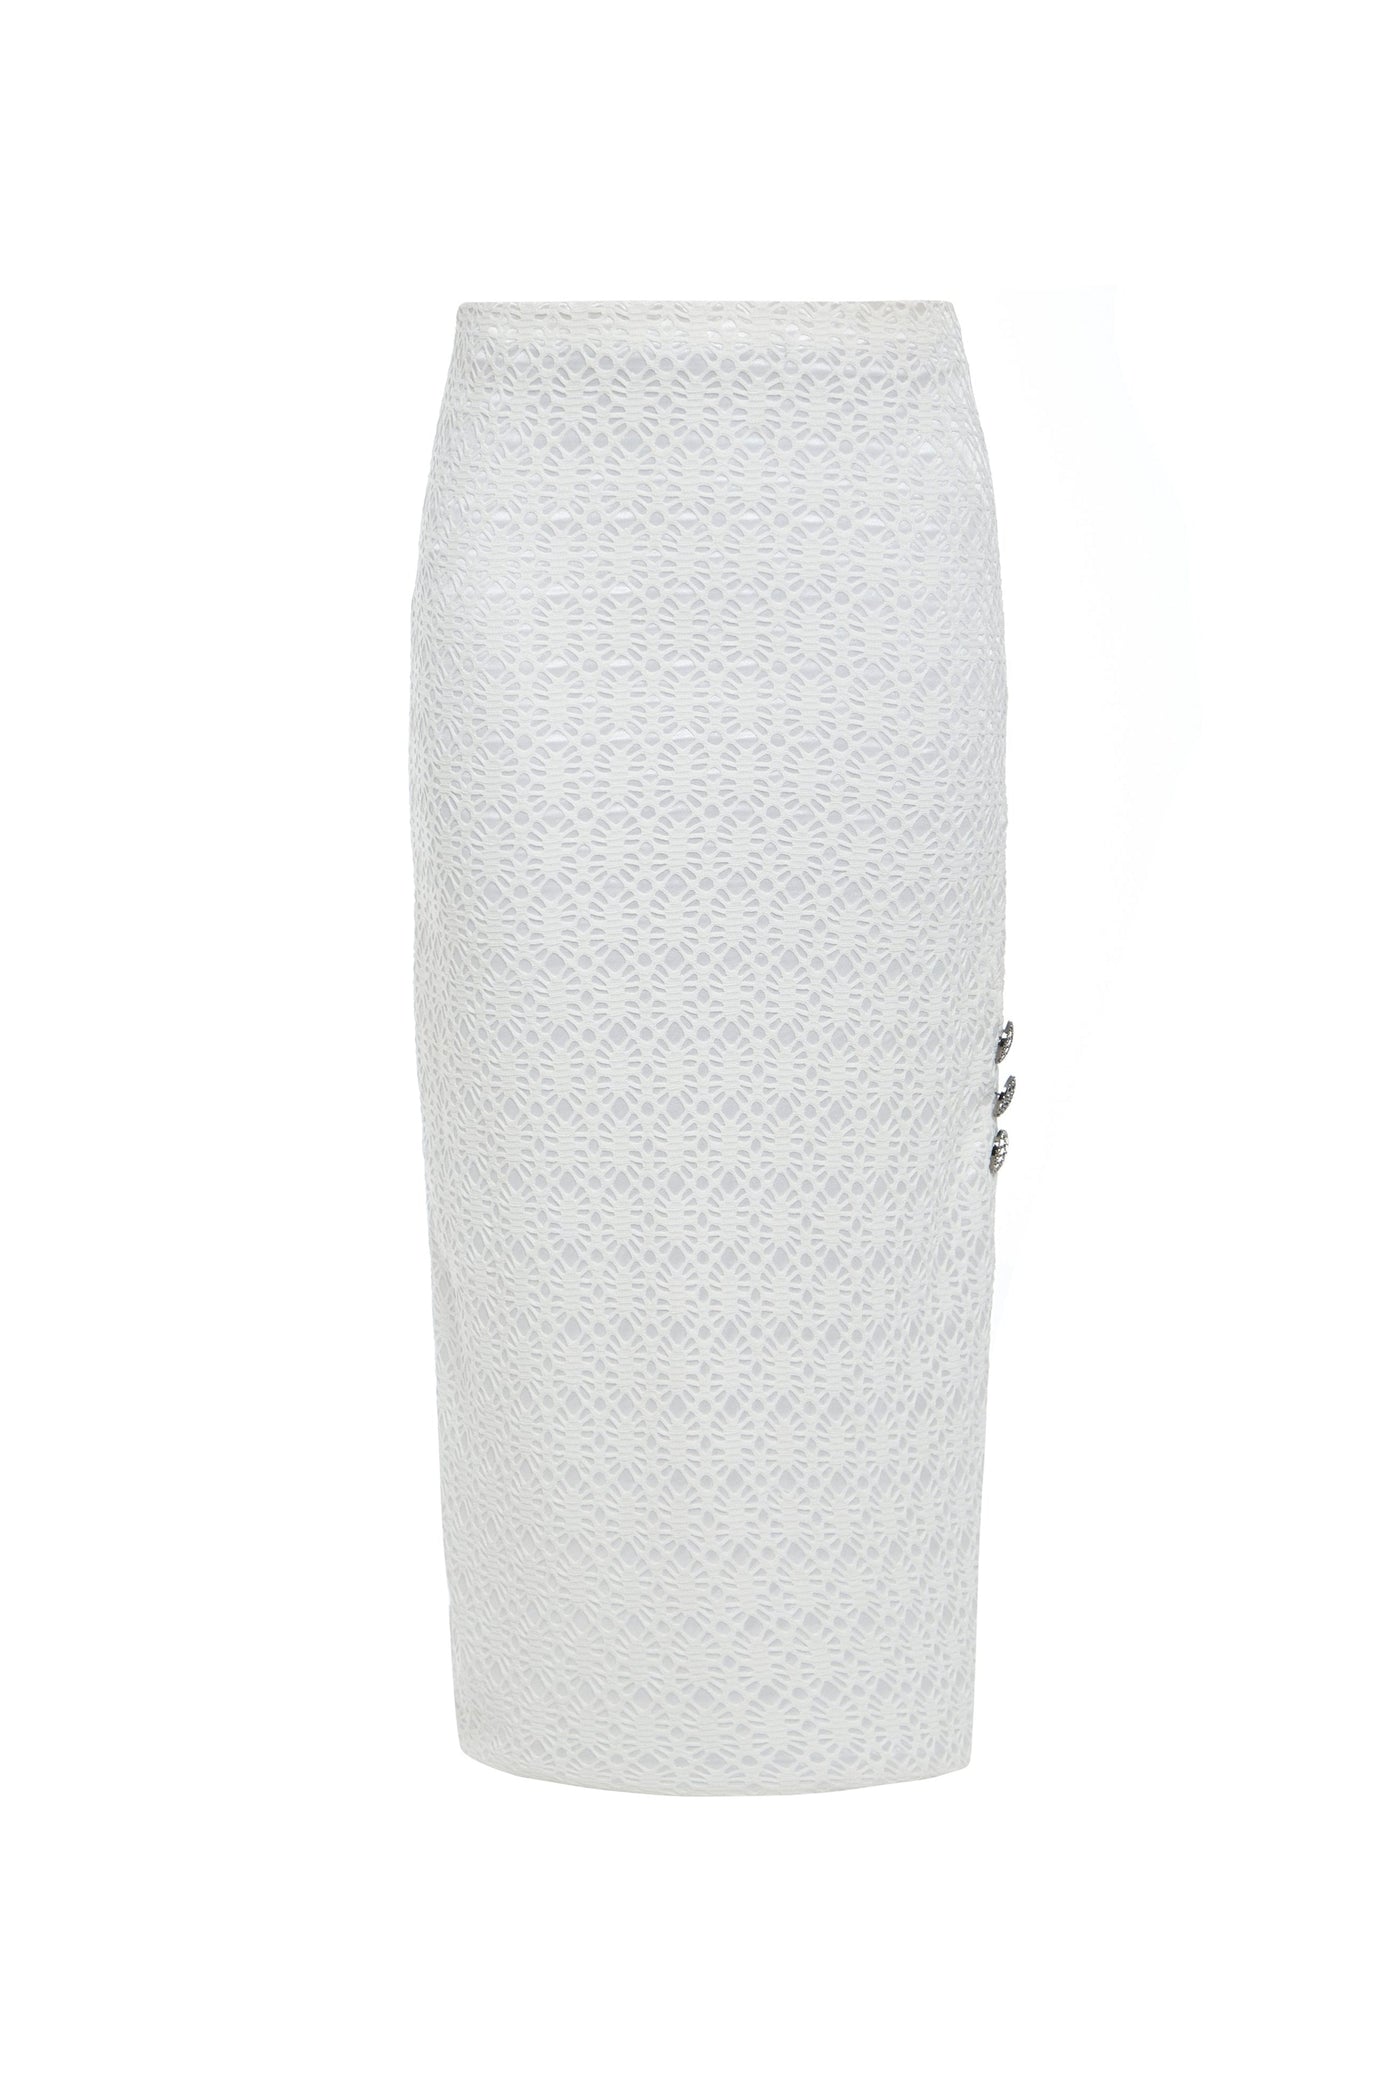 Ciara Lace Bodycon Midi Skirt White 